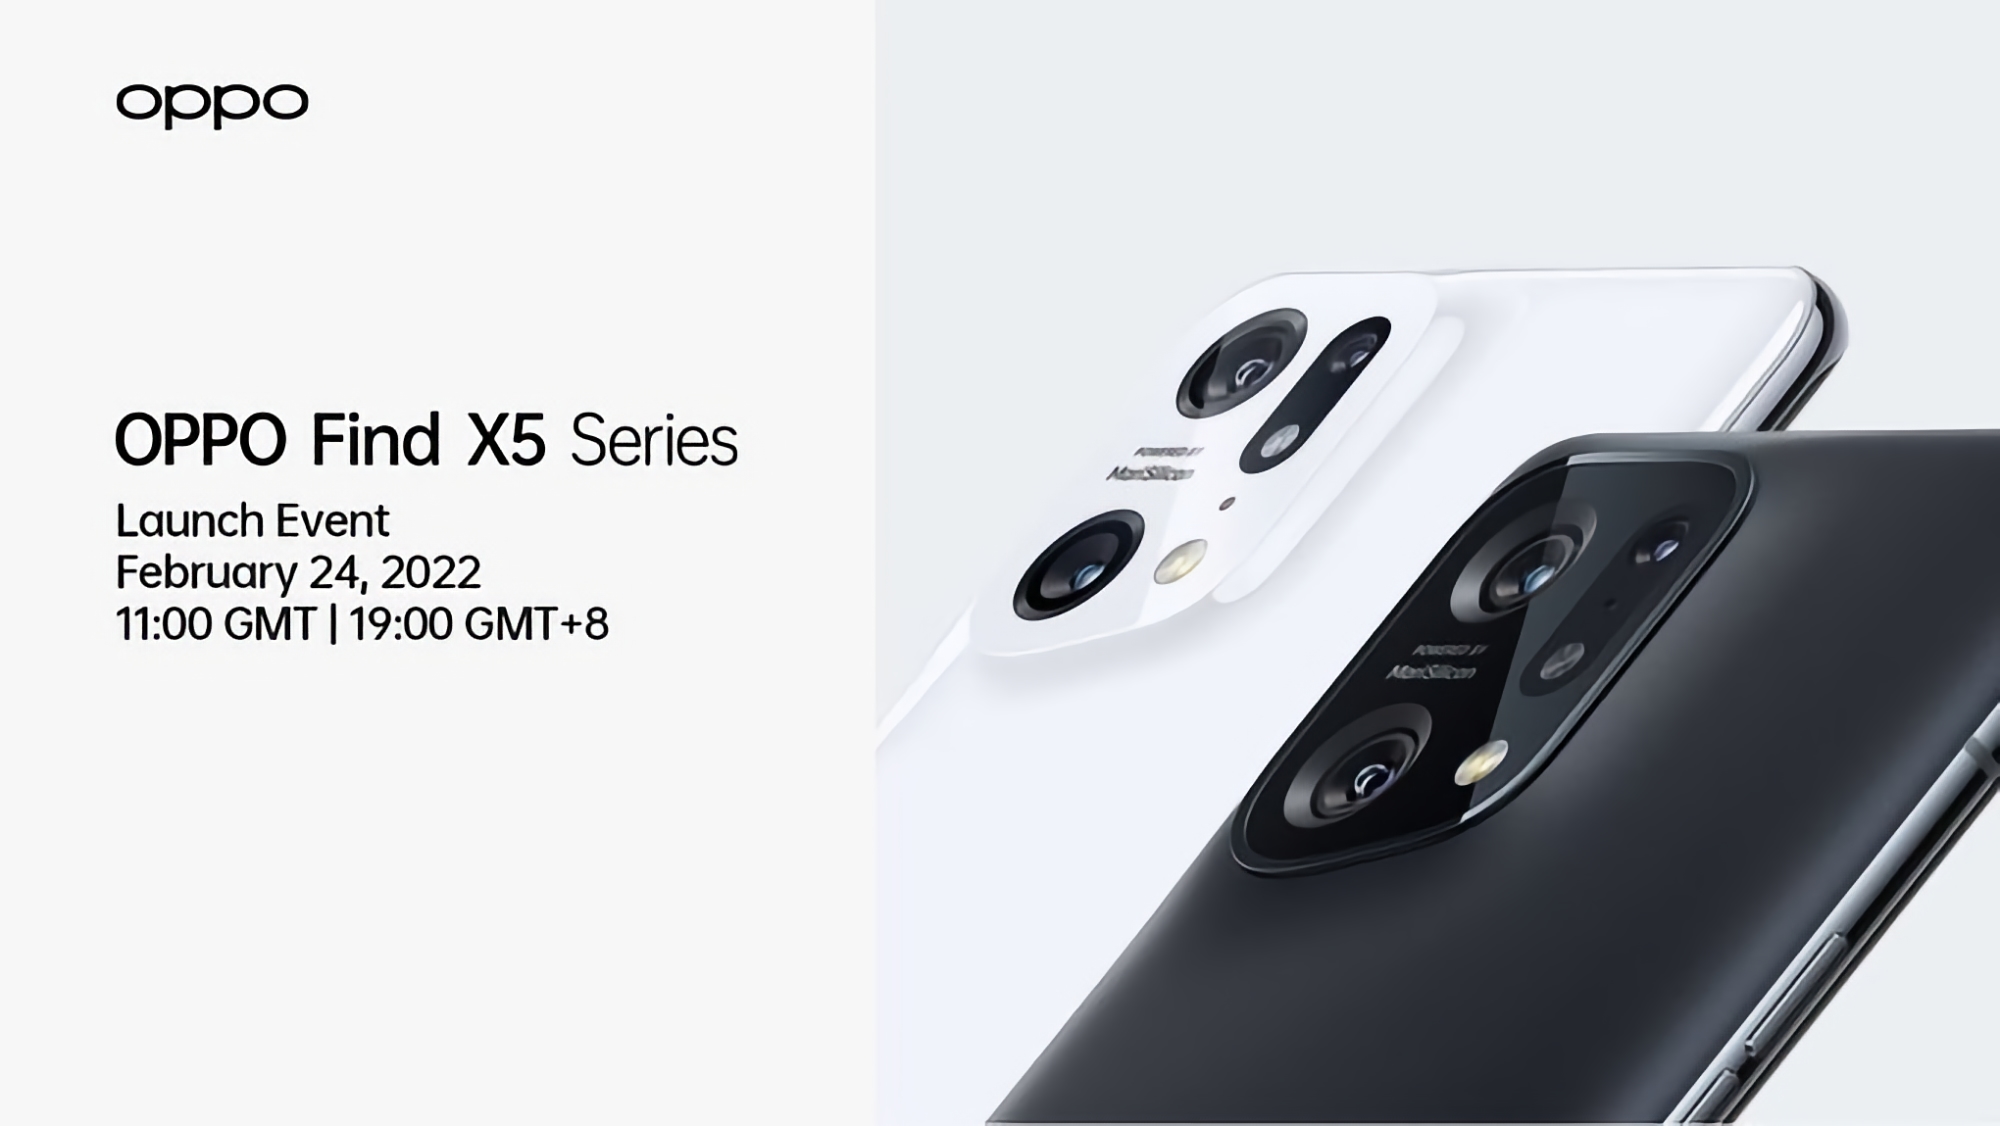 Prima del previsto: il 24 febbraio verrà presentata la serie ammiraglia di smartphone OPPO Find X5